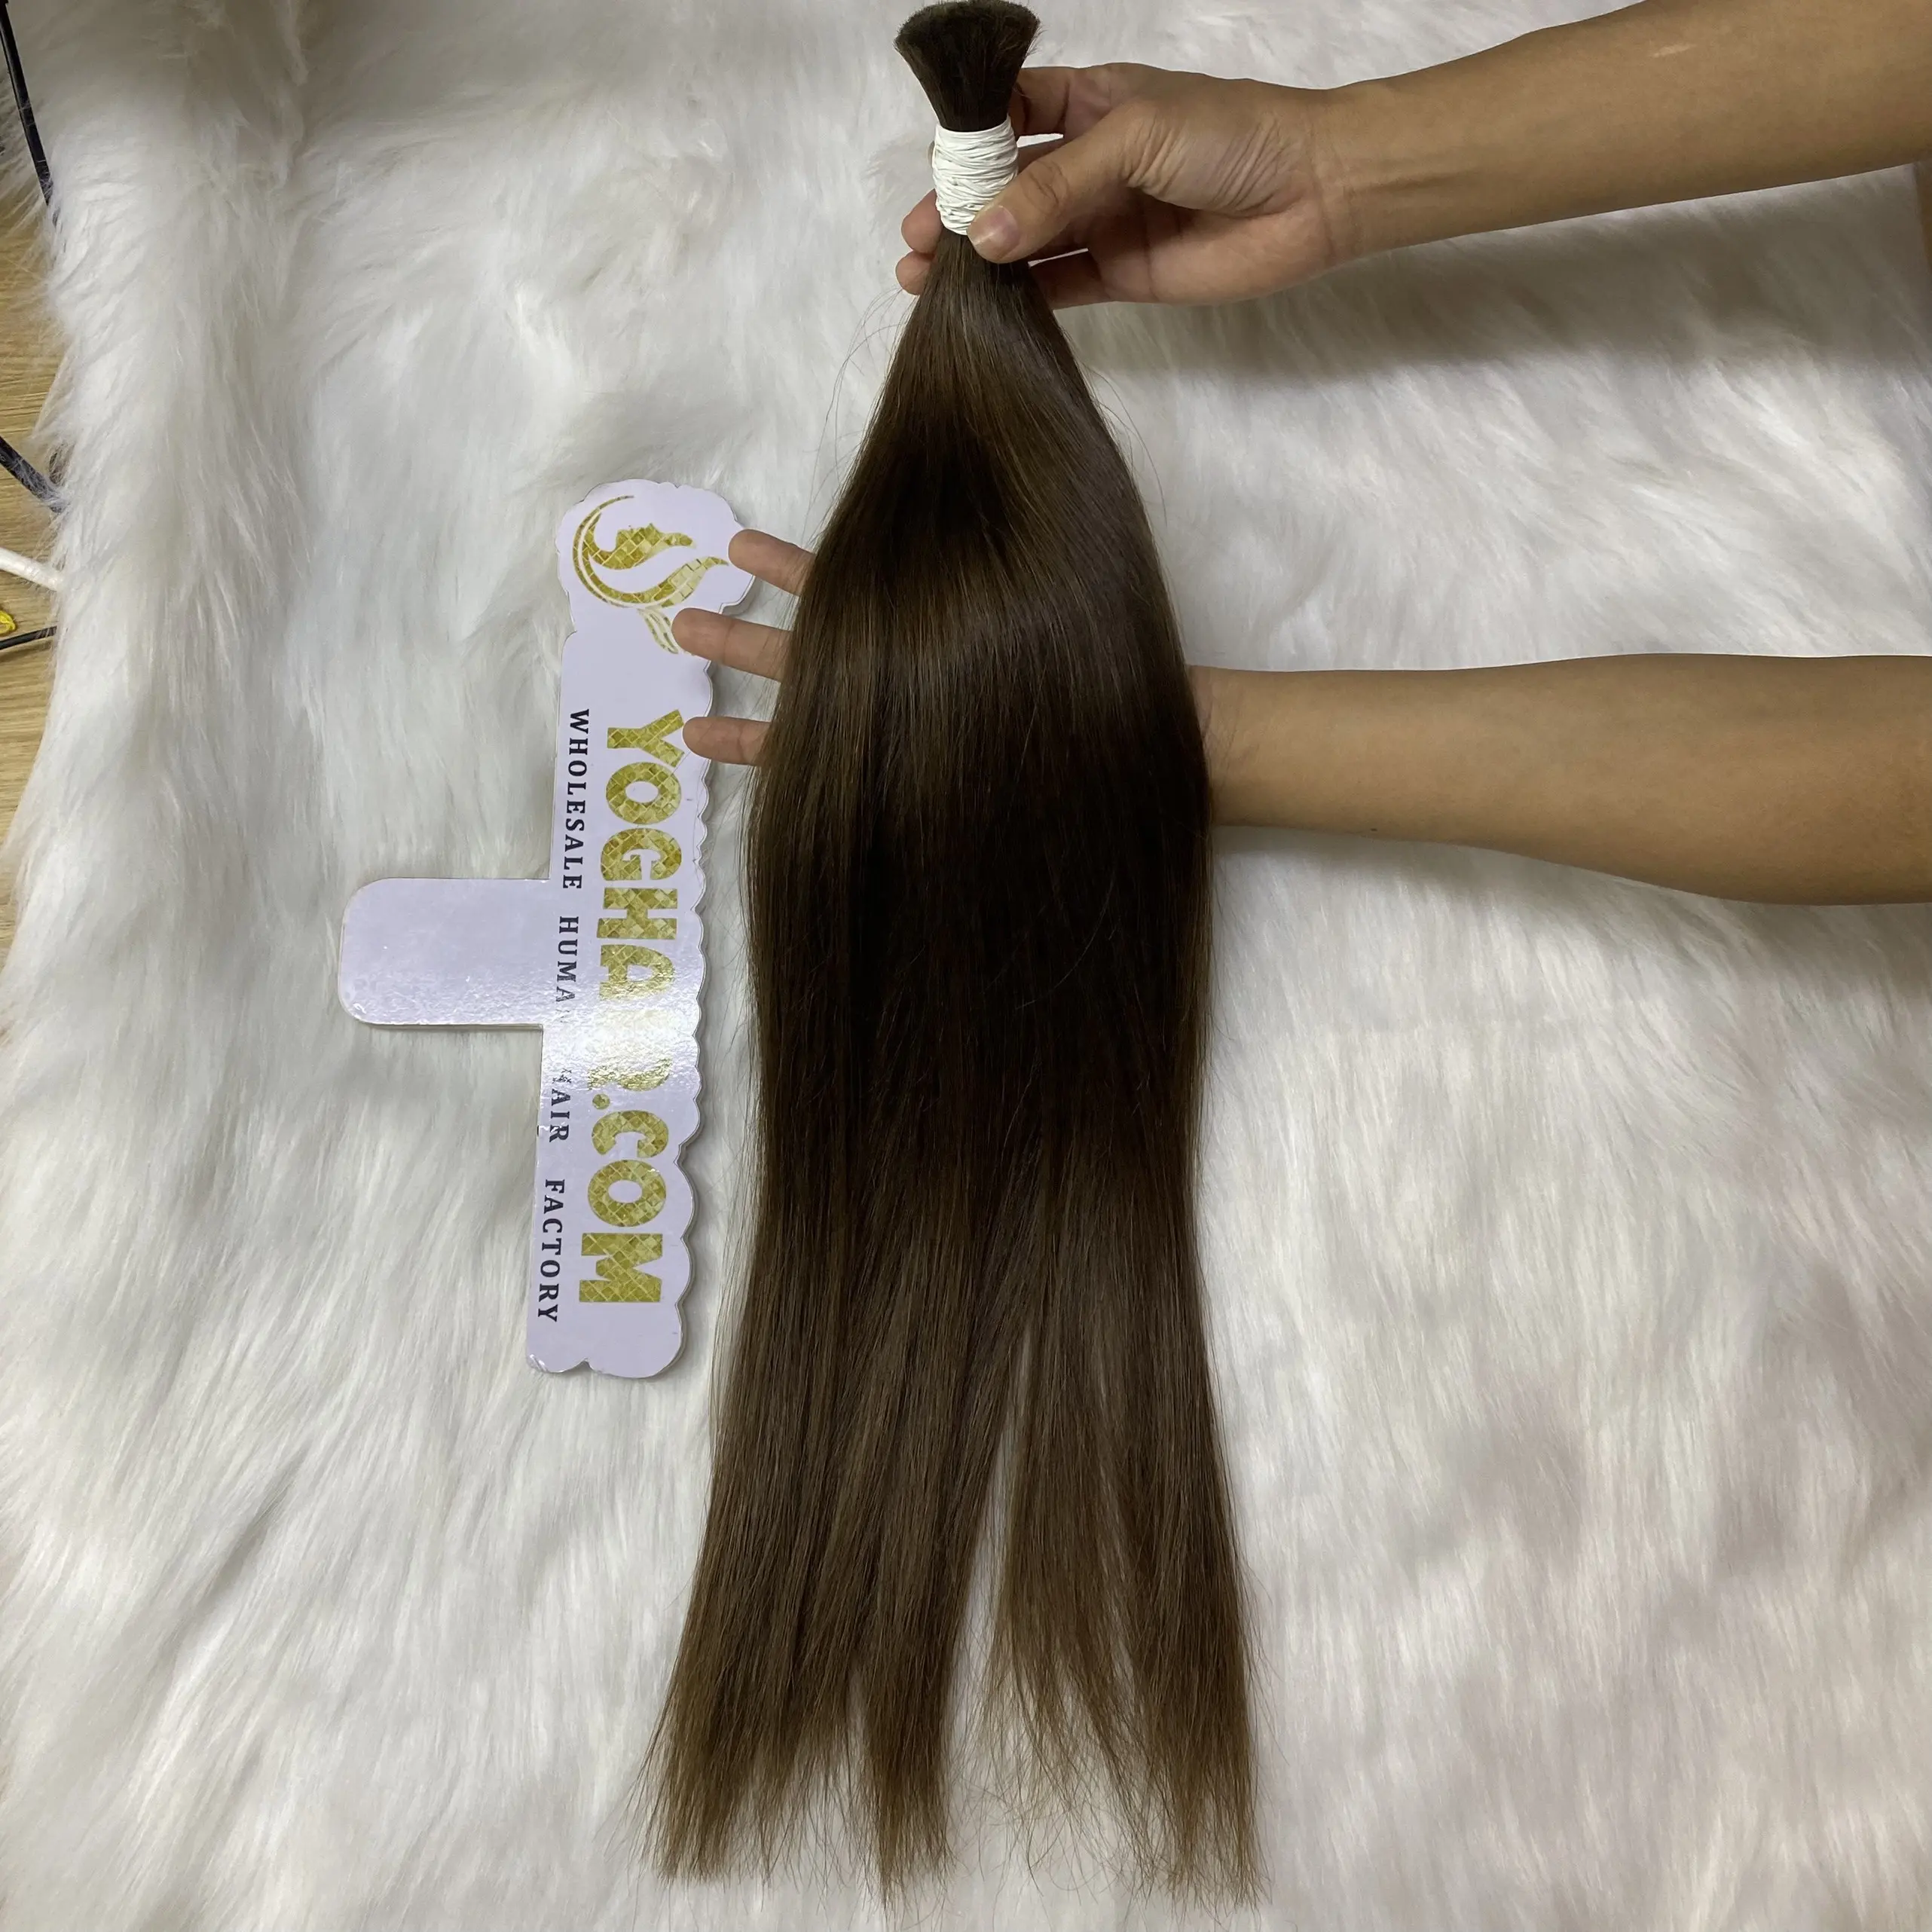 Kaufen Sie hochwertiges Bulk-Haar Schnelle Lieferung menschliches vietnam esisches Haar Unverarbeitetes rohes jungfräuliches Haar